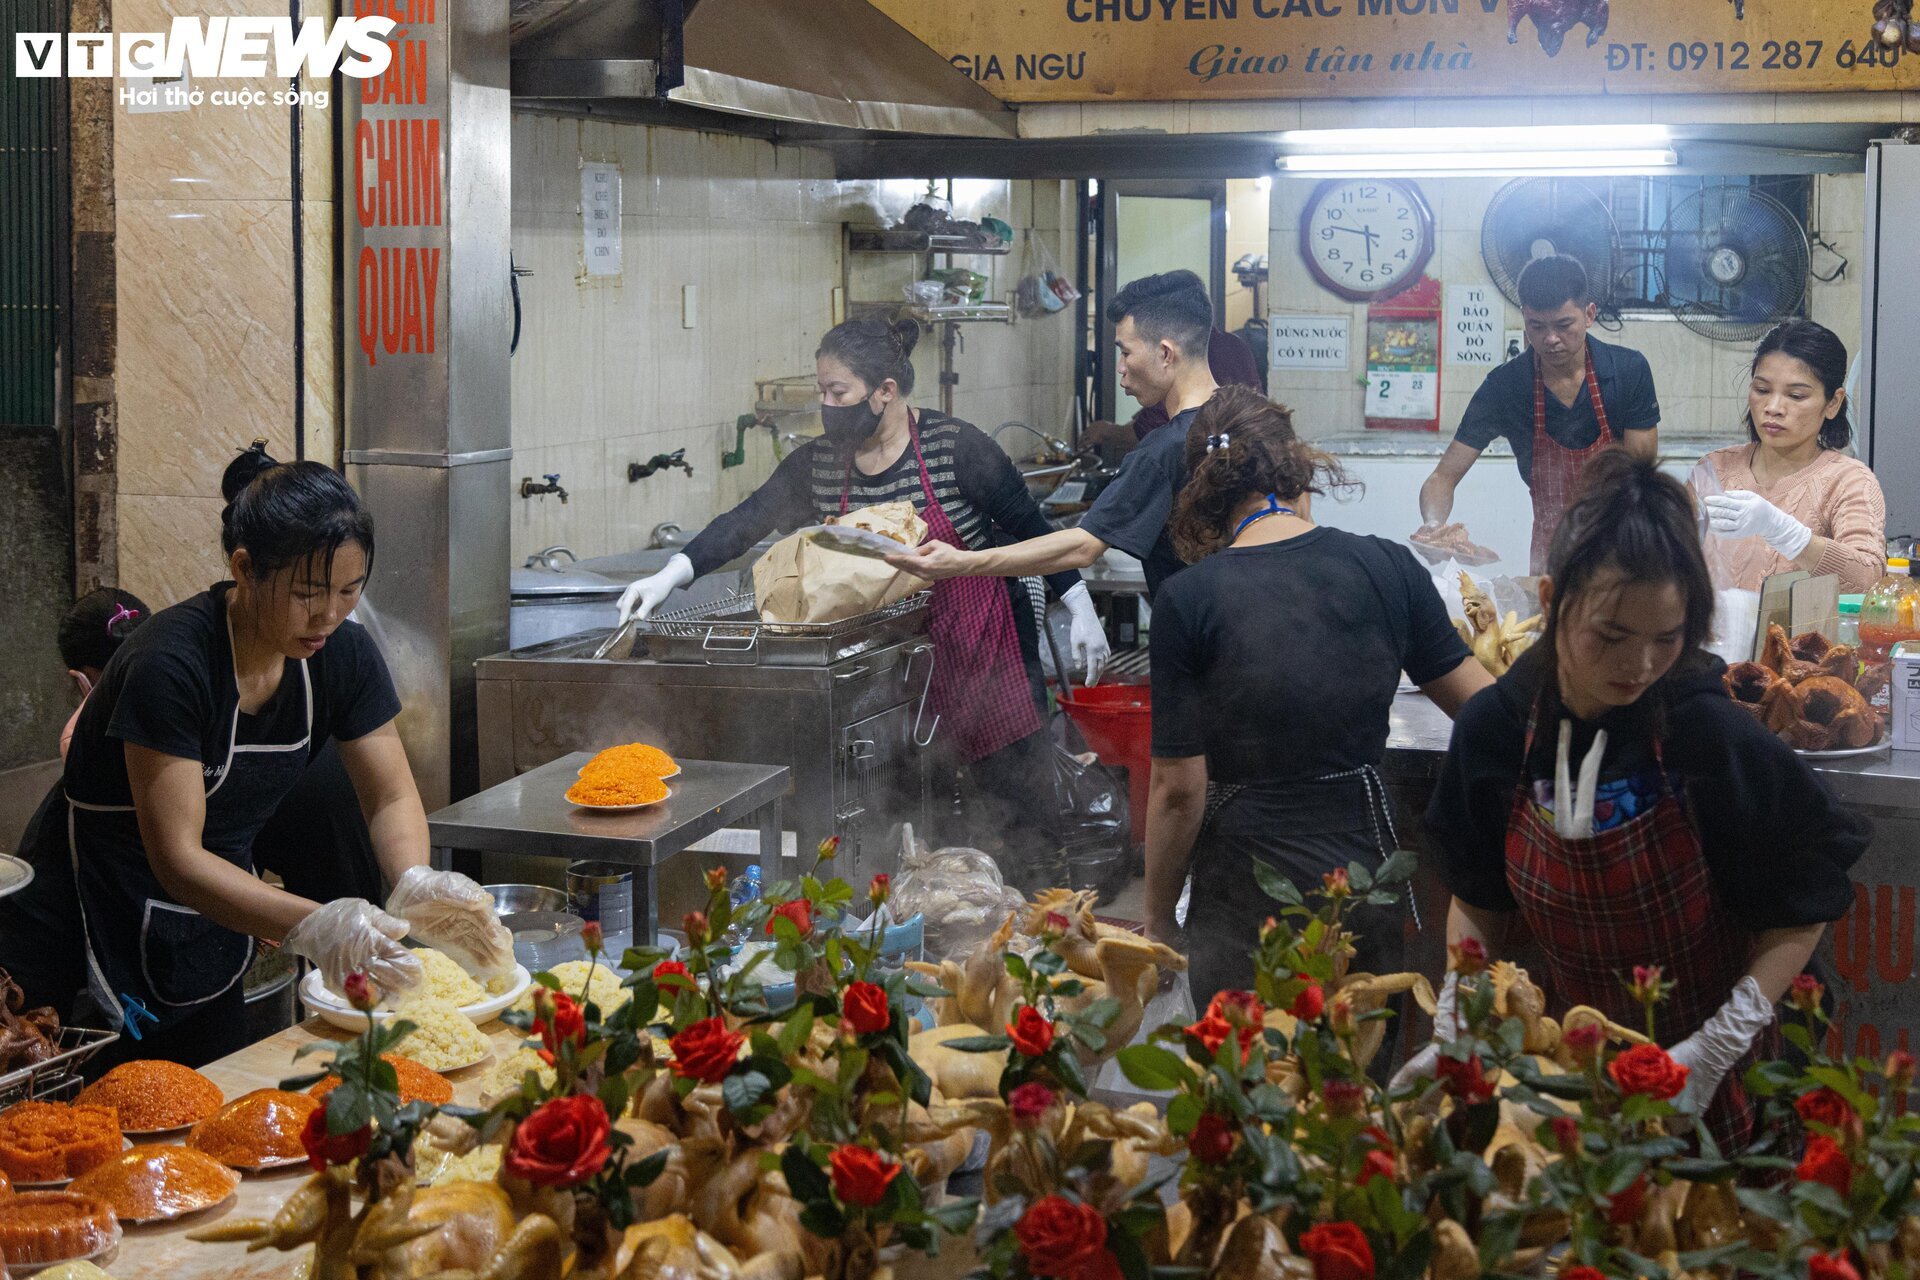 Trời Hà Nội mịt mù sương, chợ vẫn đông người sắm lễ ông Công ông Táo từ sáng sớm - Ảnh 5.